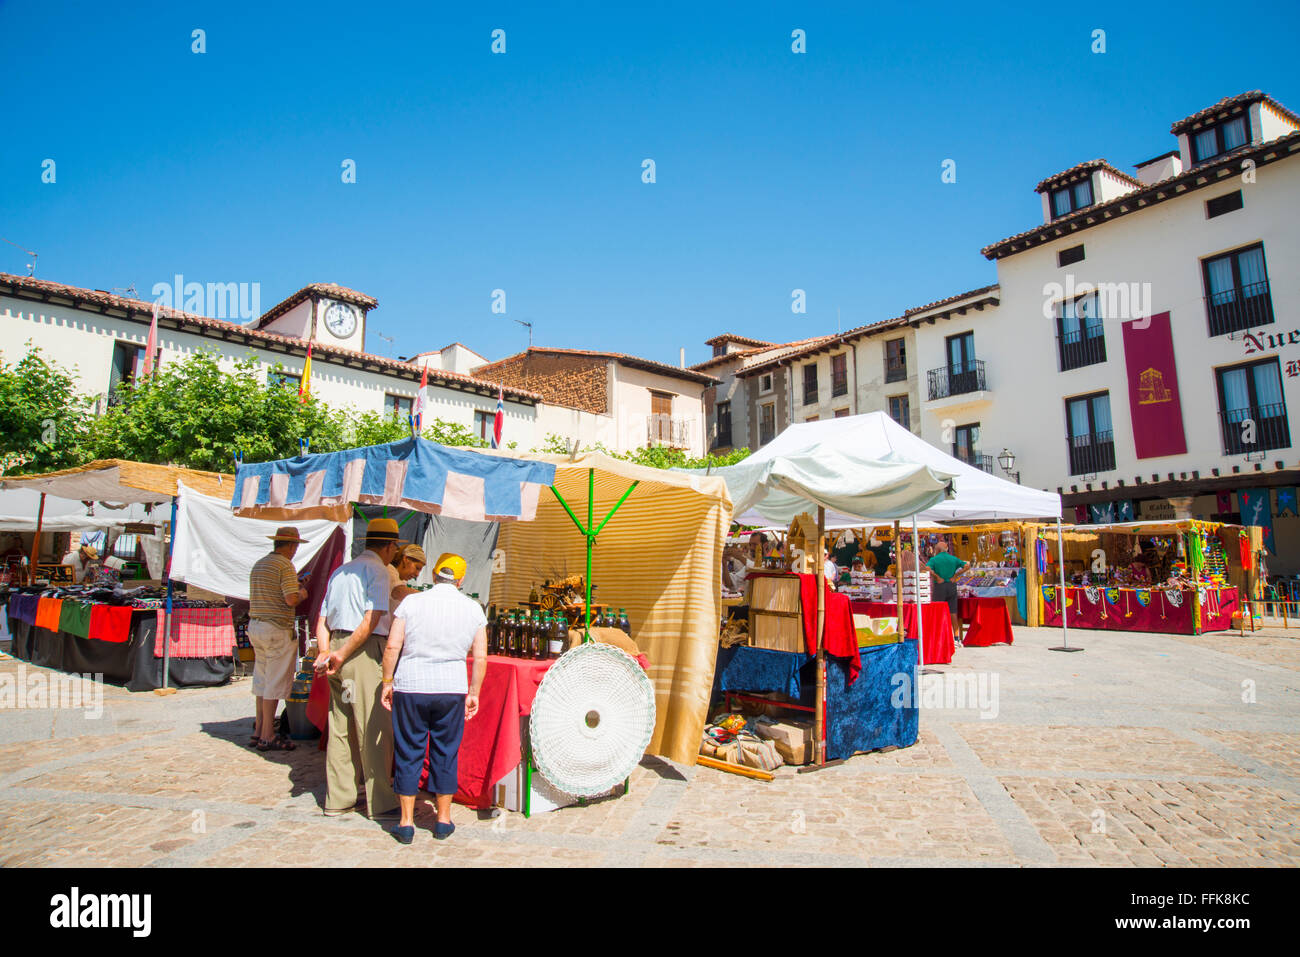 Medievale del mercato delle pulci nella piazza principale durante la Sagra delle ciliegie. Covarrubias, provincia di Burgos, Castilla Leon, Spagna. Foto Stock